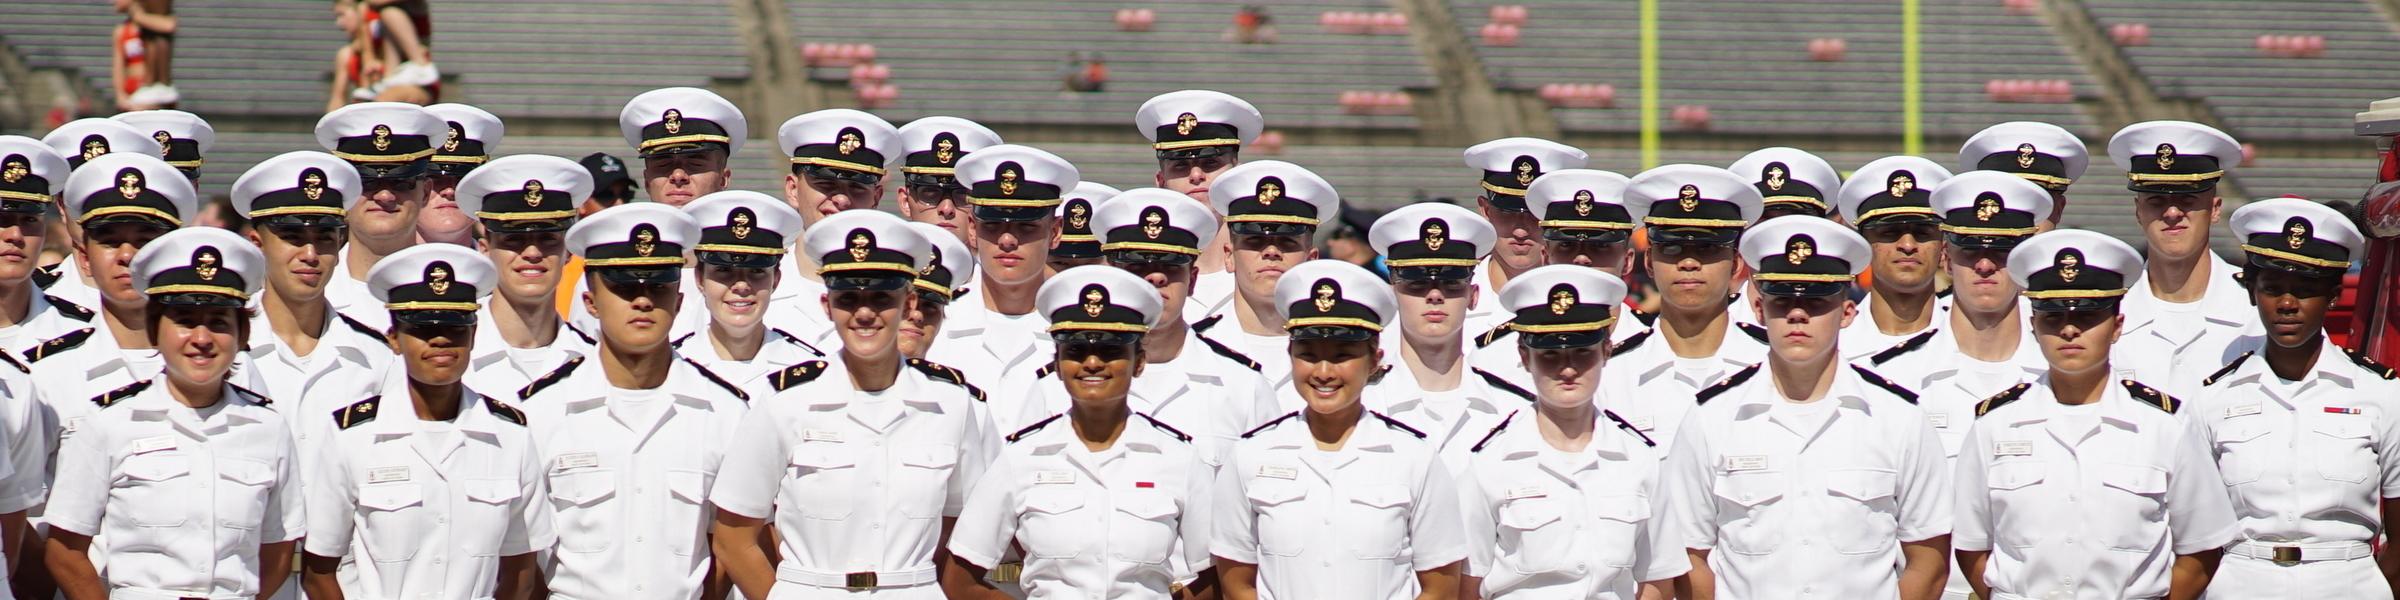 Battalion in Navy Whites